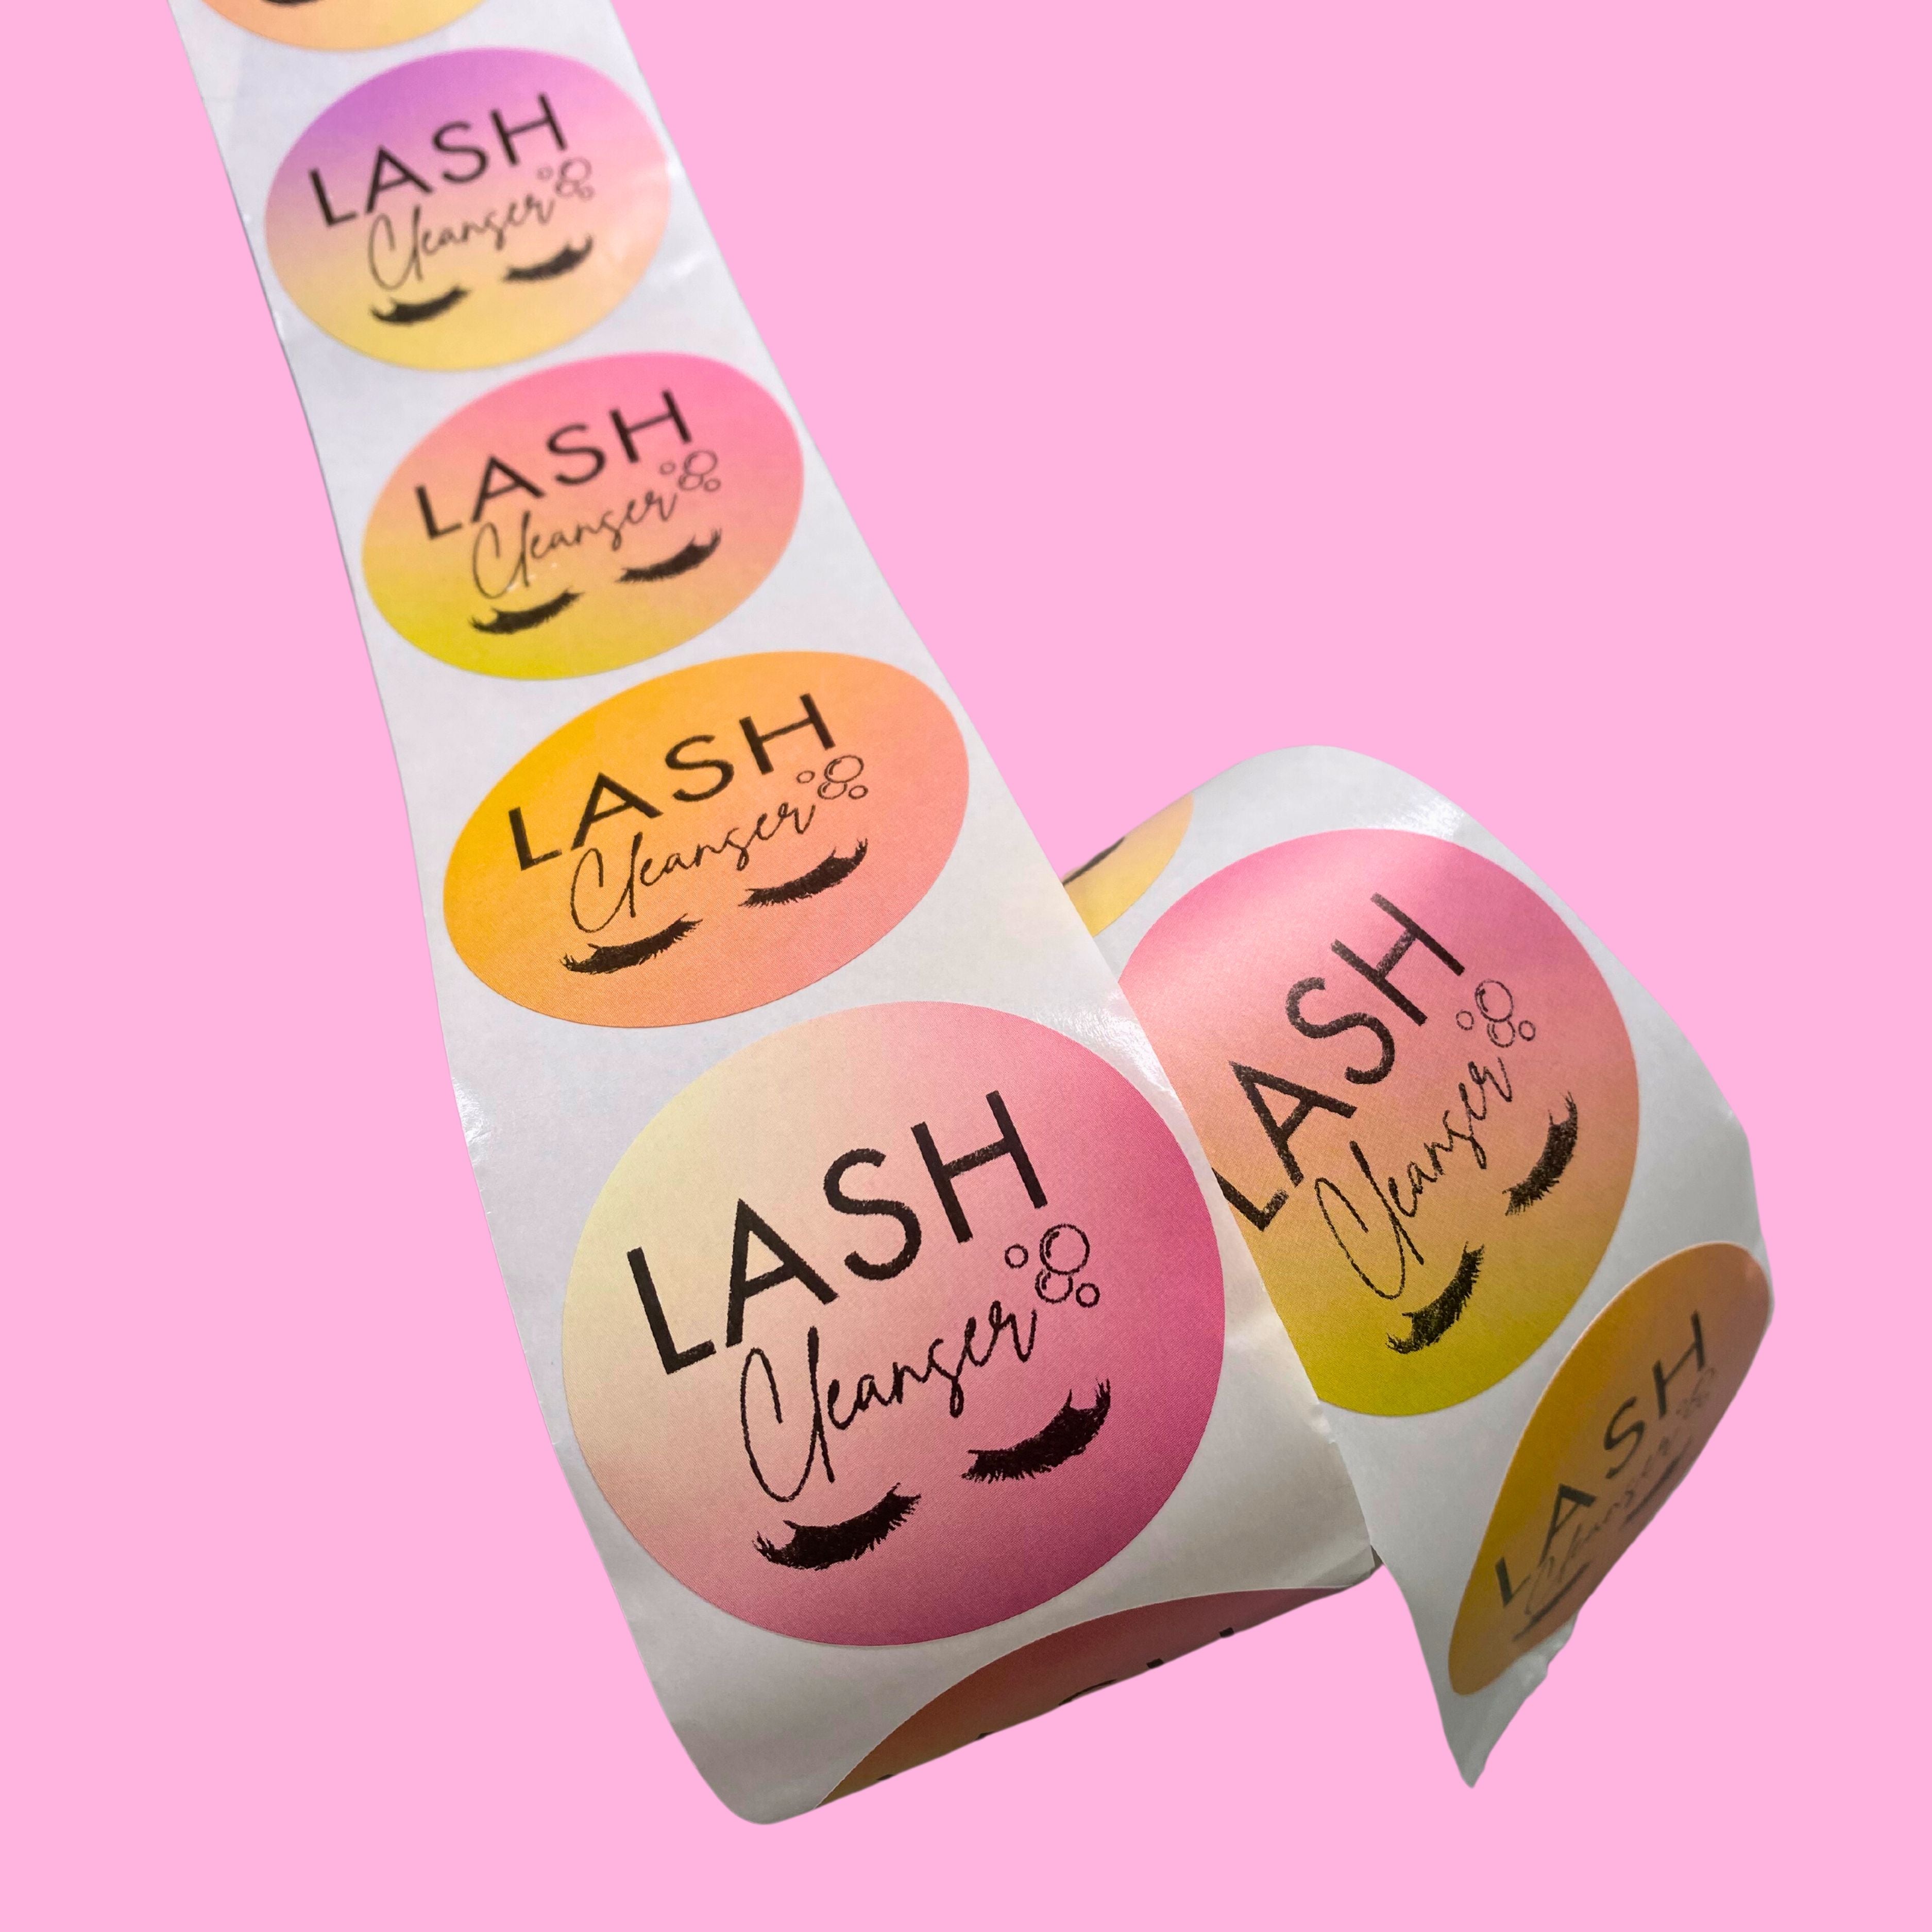 2" round ombre lash bath labels